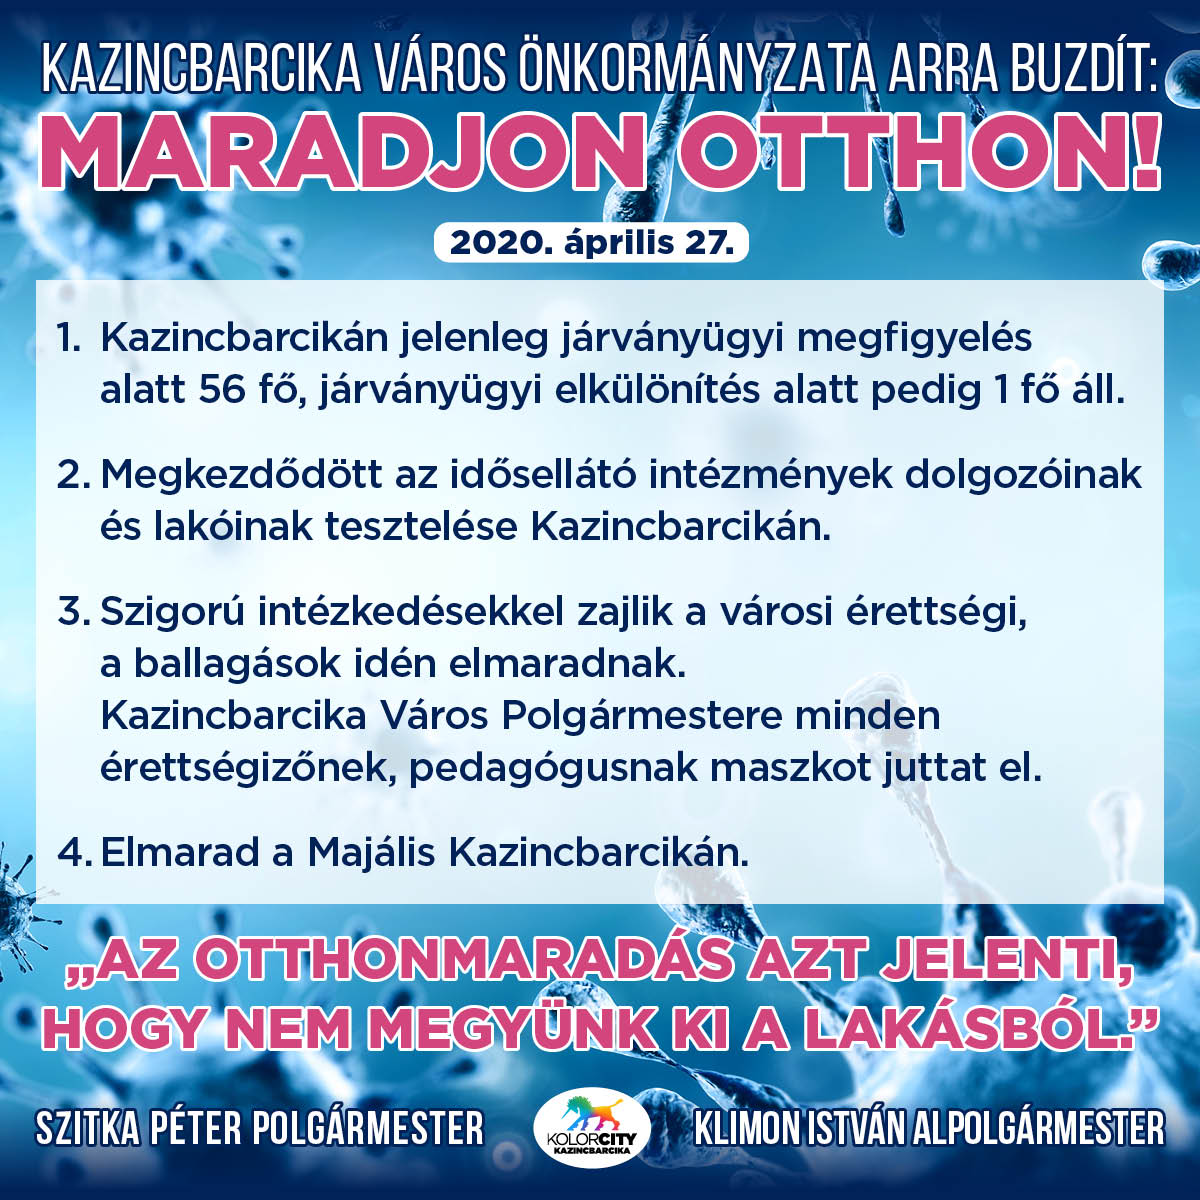 https://kolorline.hu/Kazincbarcika Város Önkormányzata arra buzdít: Maradj otthon! – 2020. április 27.